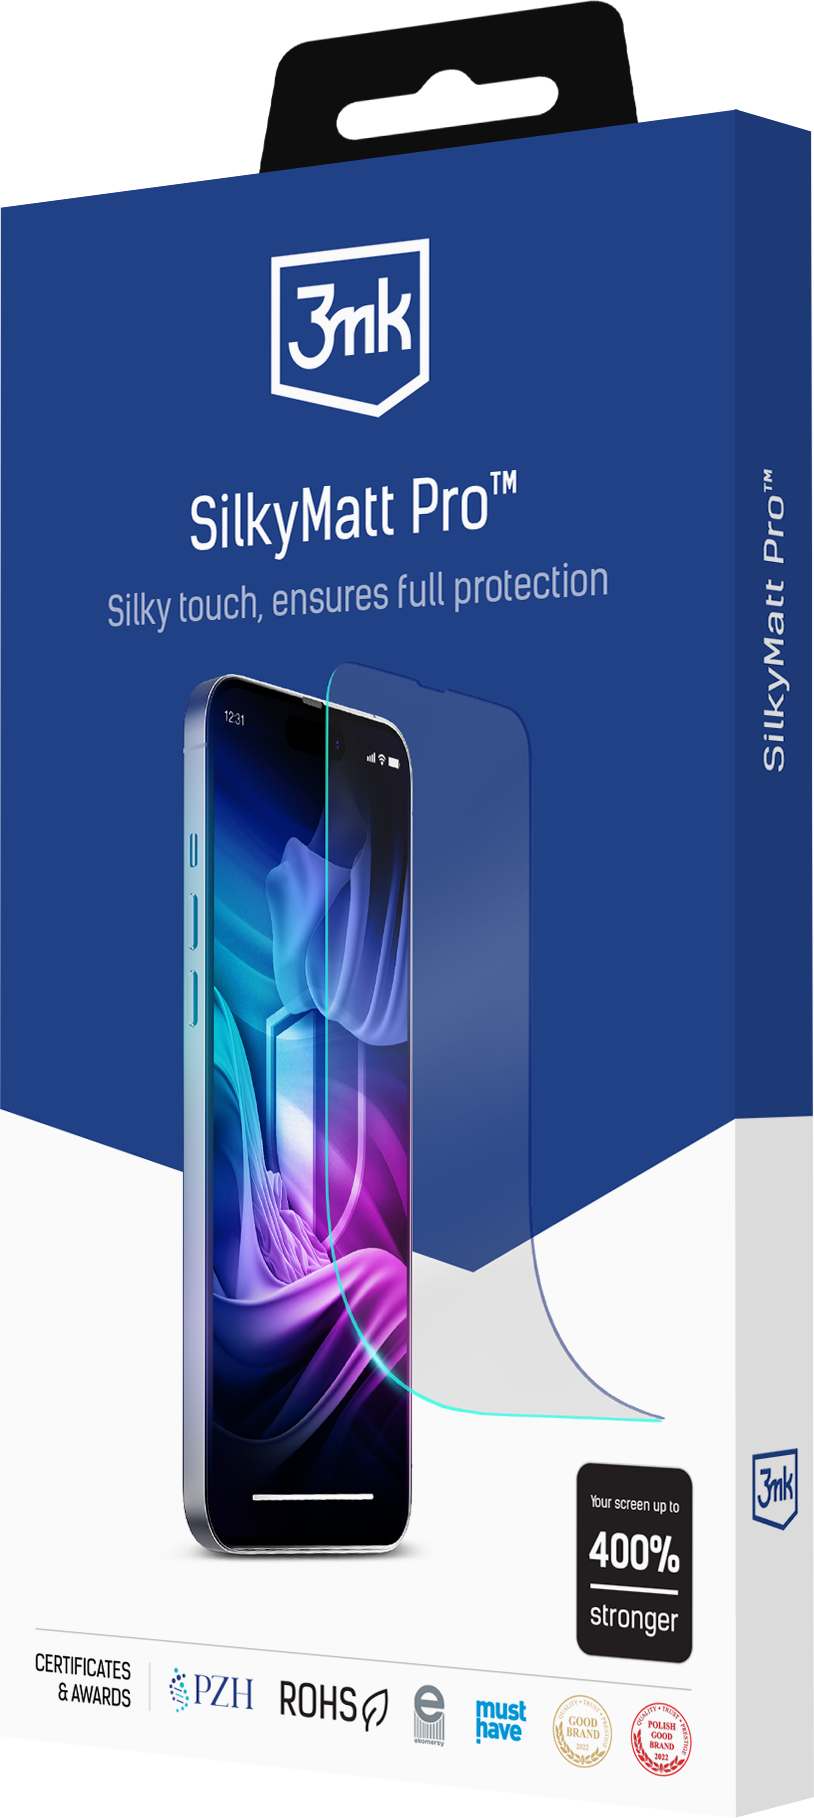 3mk-packshot-SilkiMatt-Pro-v2